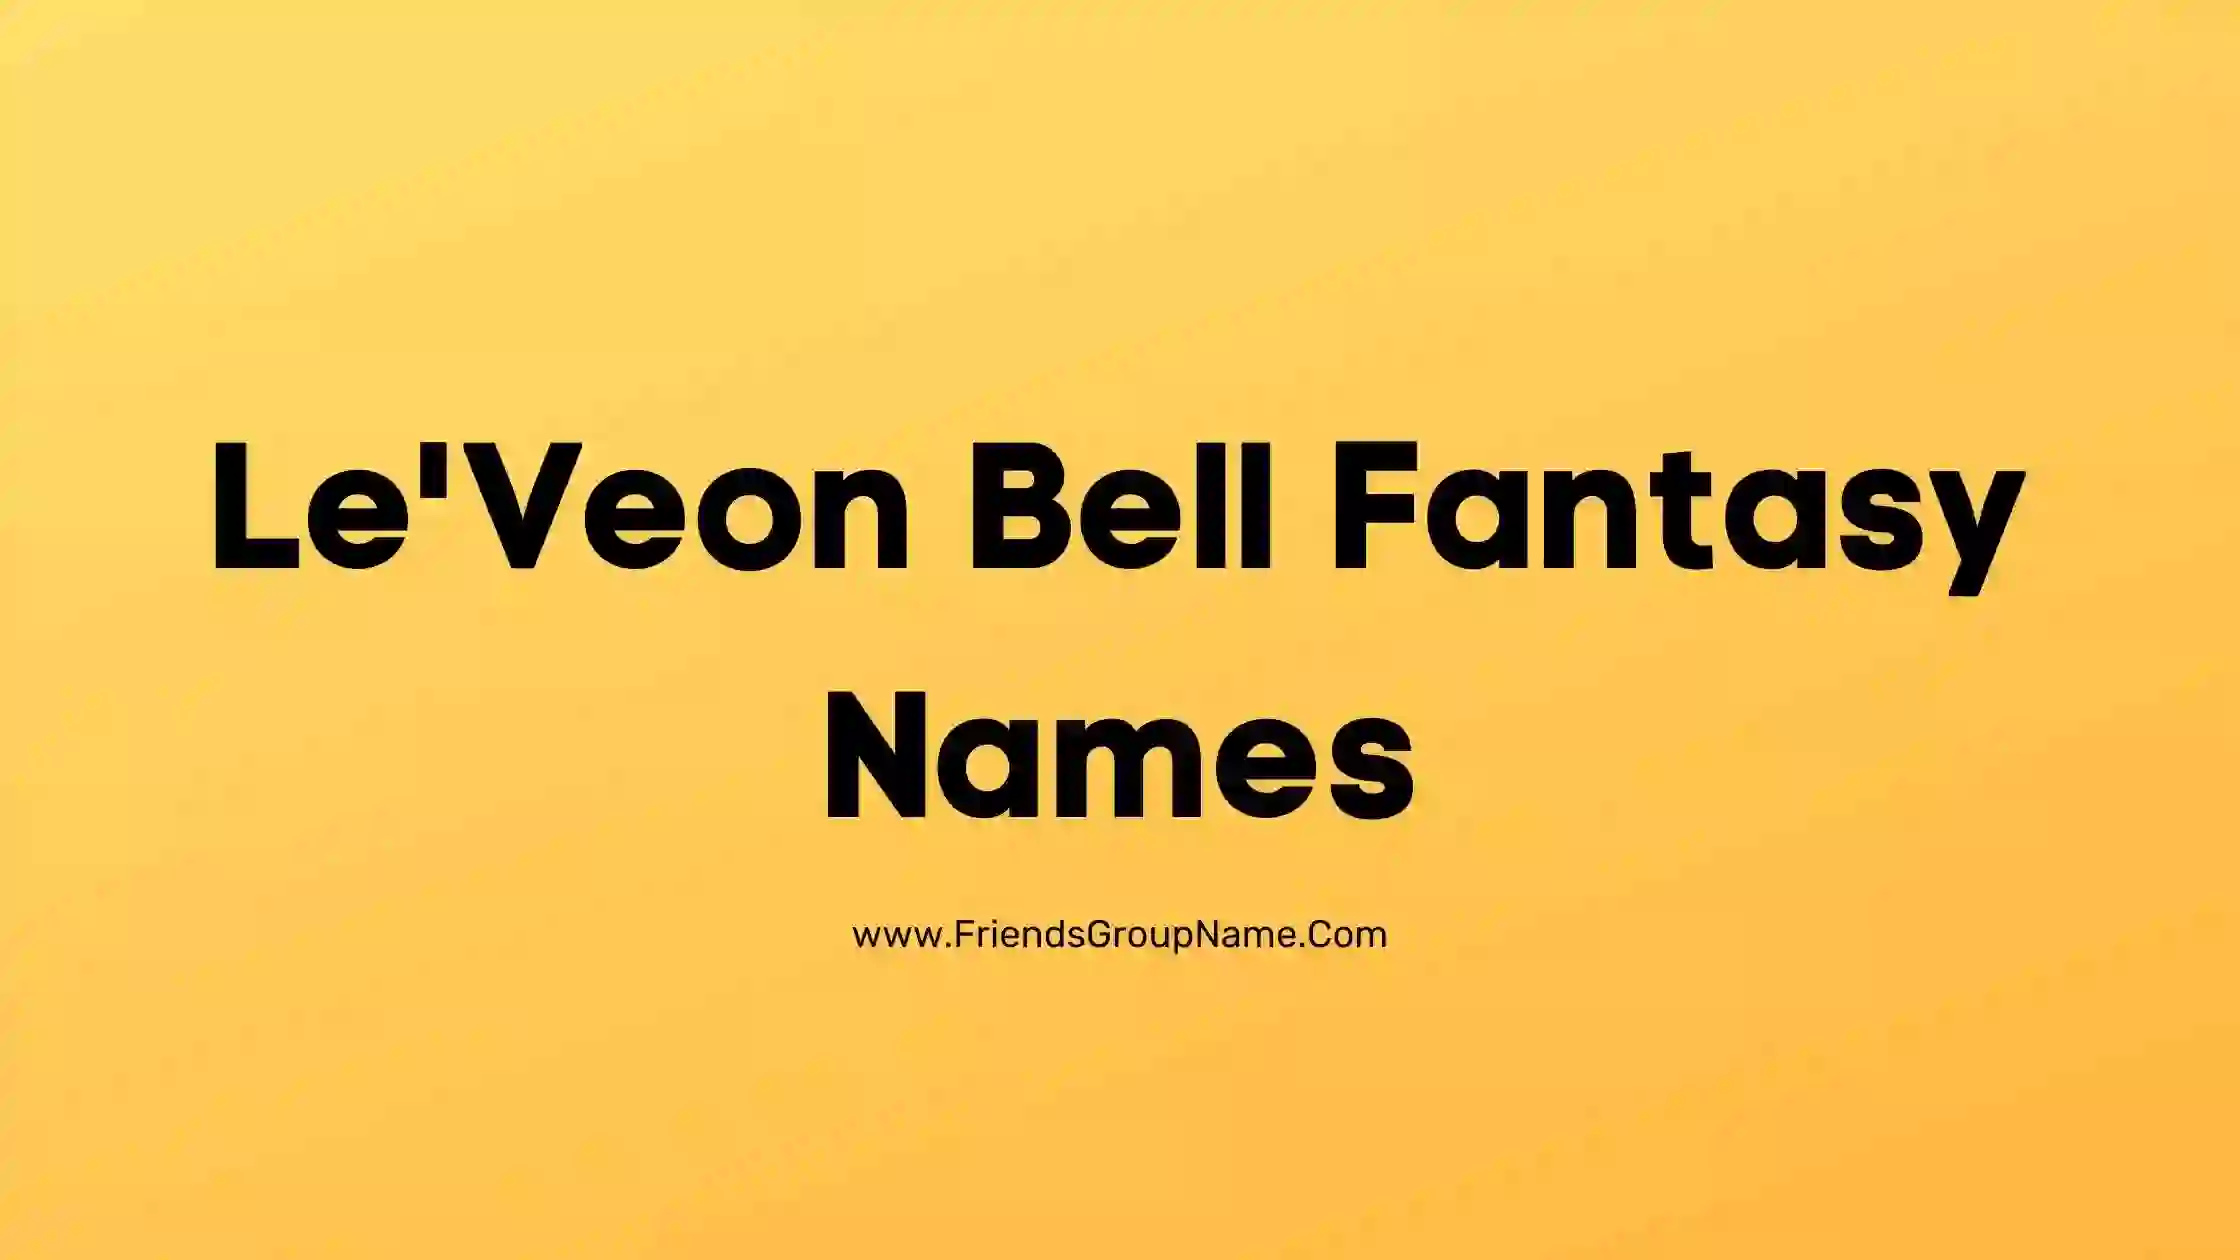 Le'Veon Bell Fantasy Names